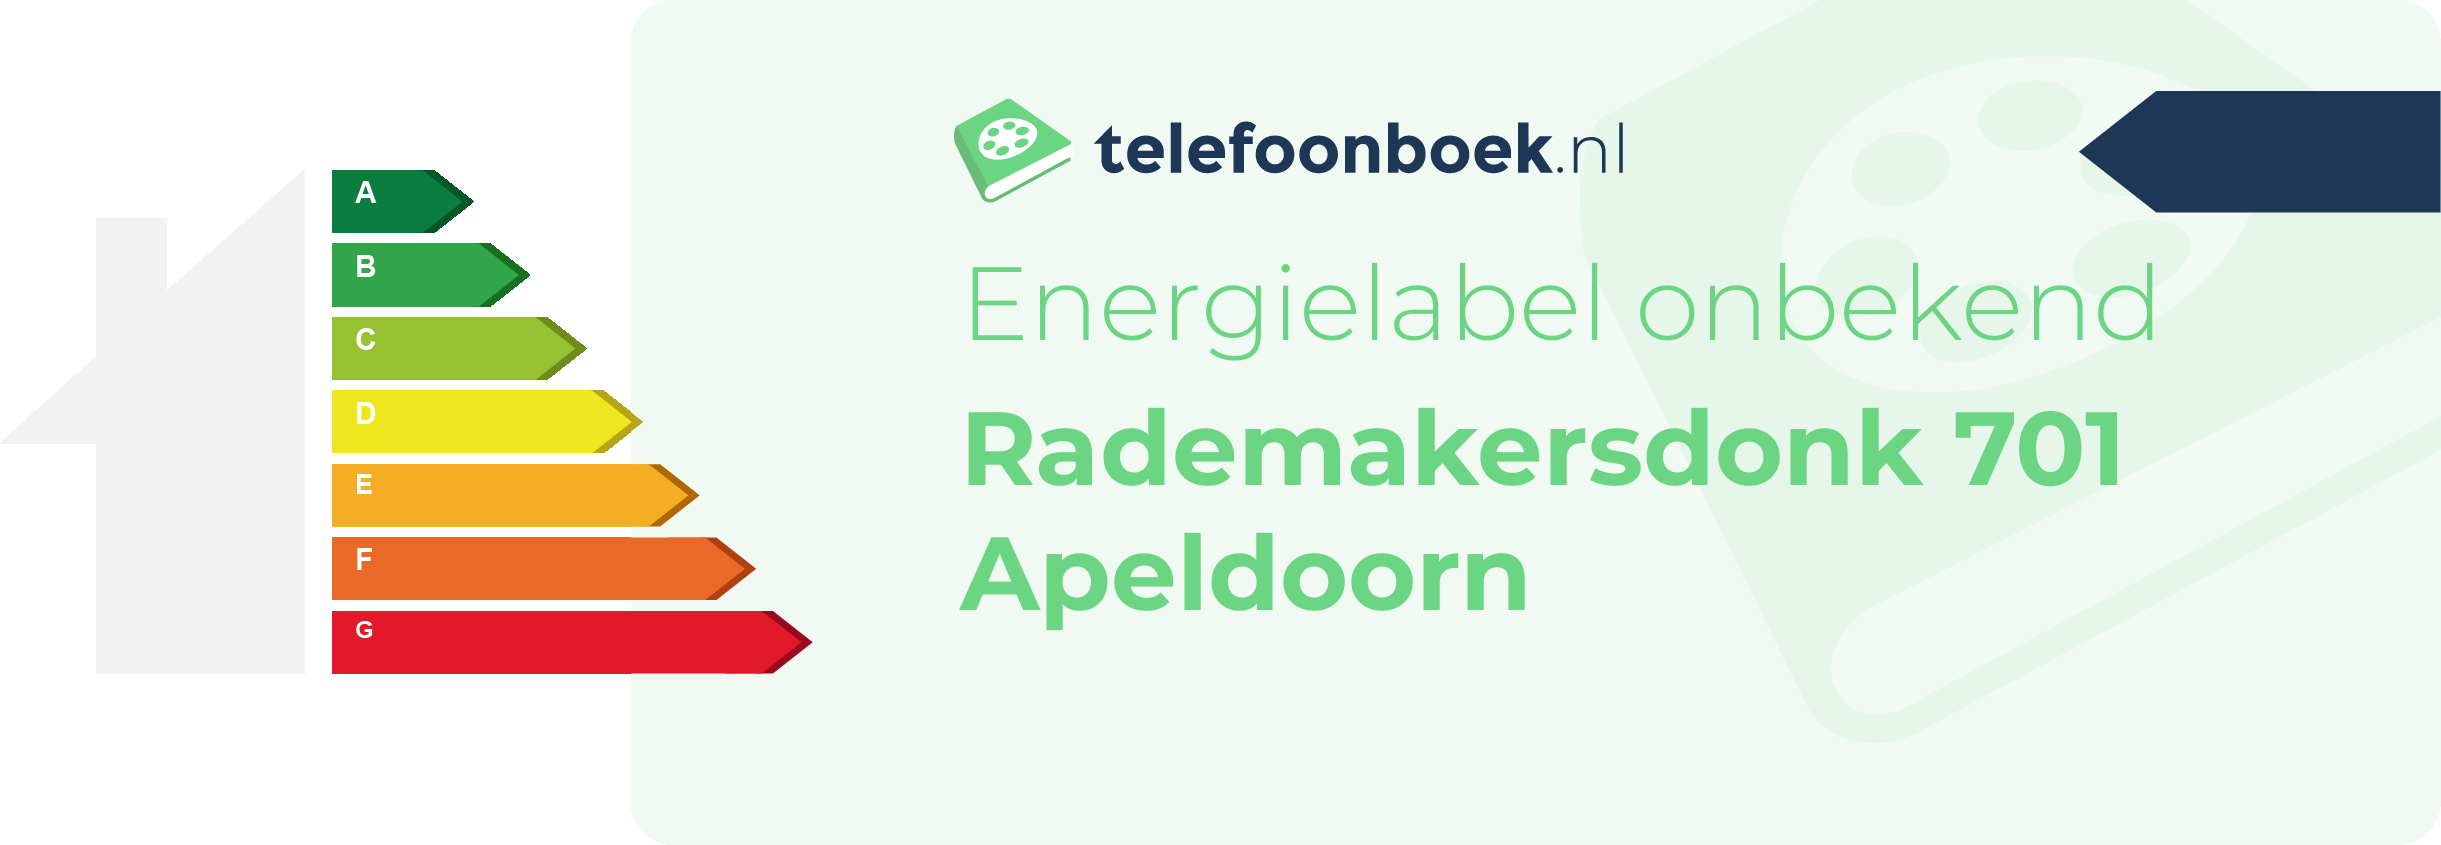 Energielabel Rademakersdonk 701 Apeldoorn